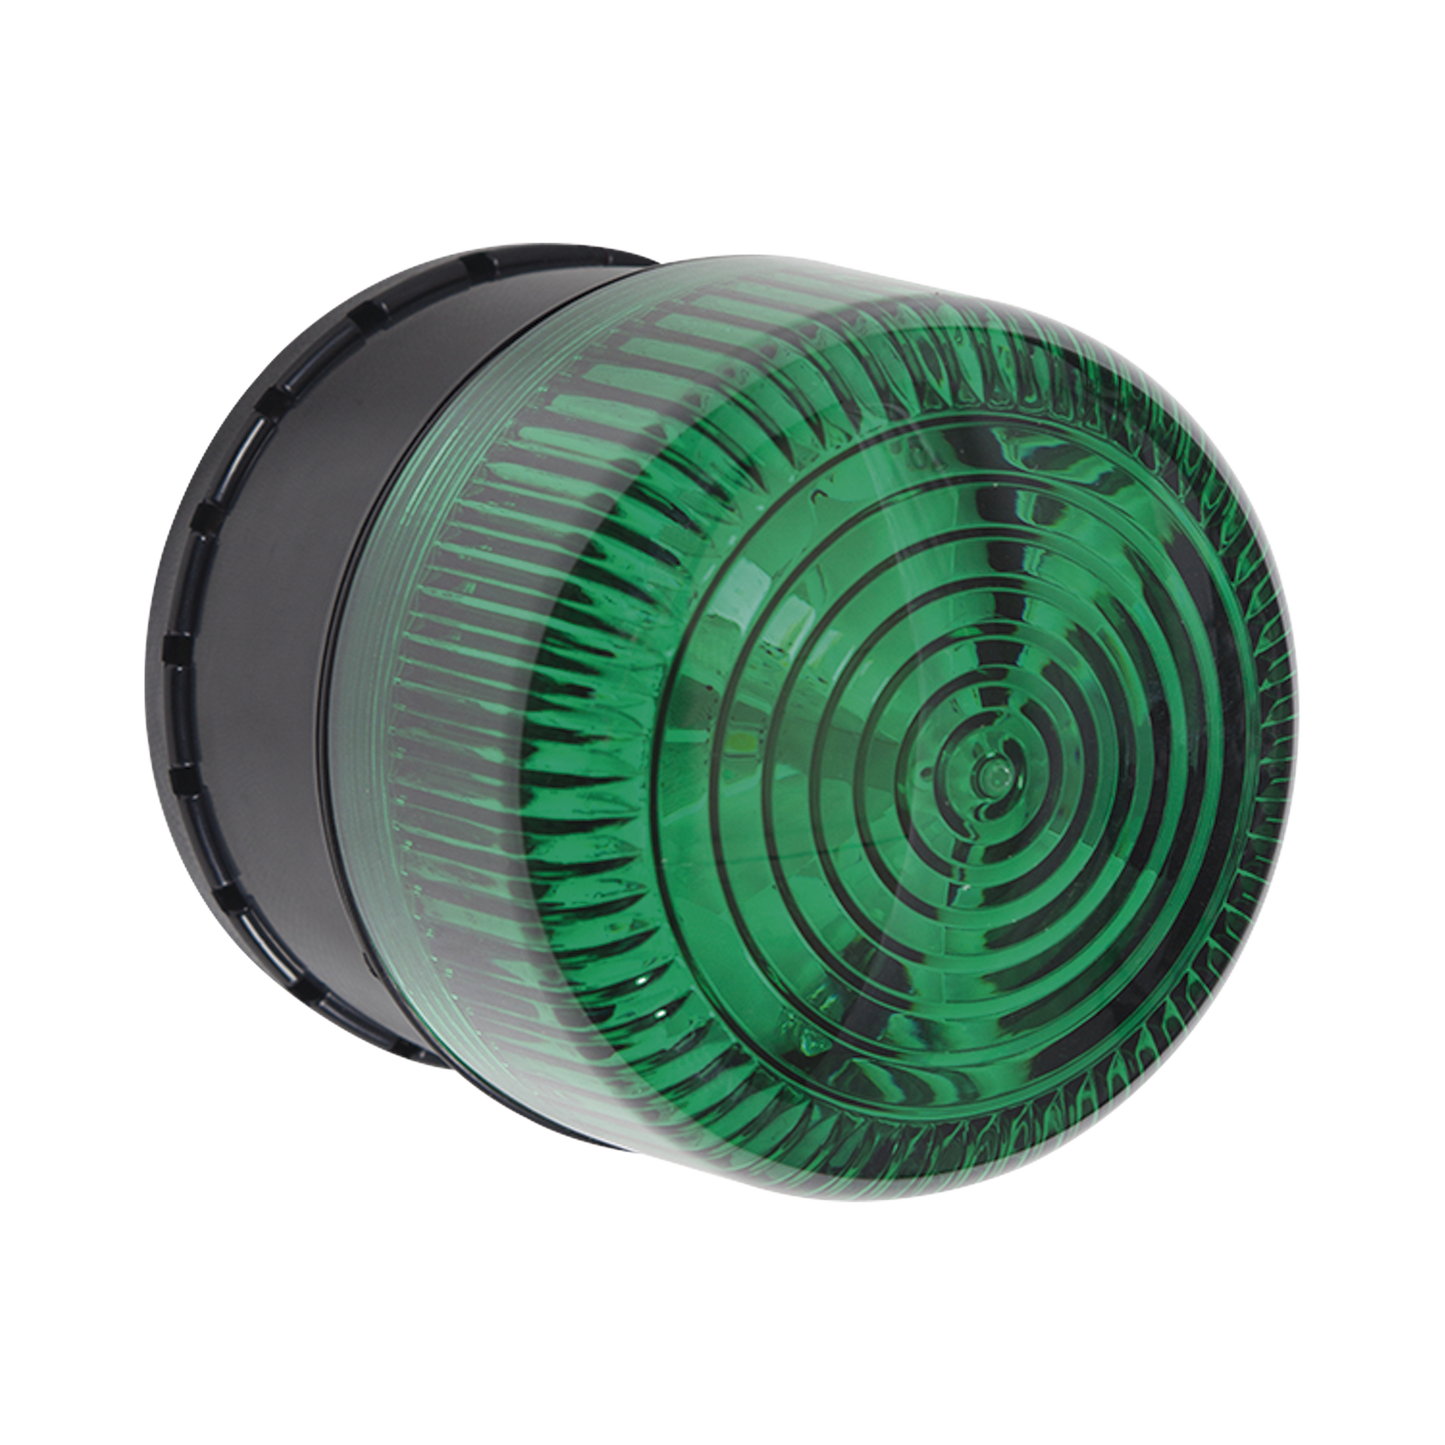 Microcontrolador SELECT-ALERT con Alarma Sirena/Estrobo para notificar Entradas/Salidas No Autorizadas y Emergencias, Color Verde